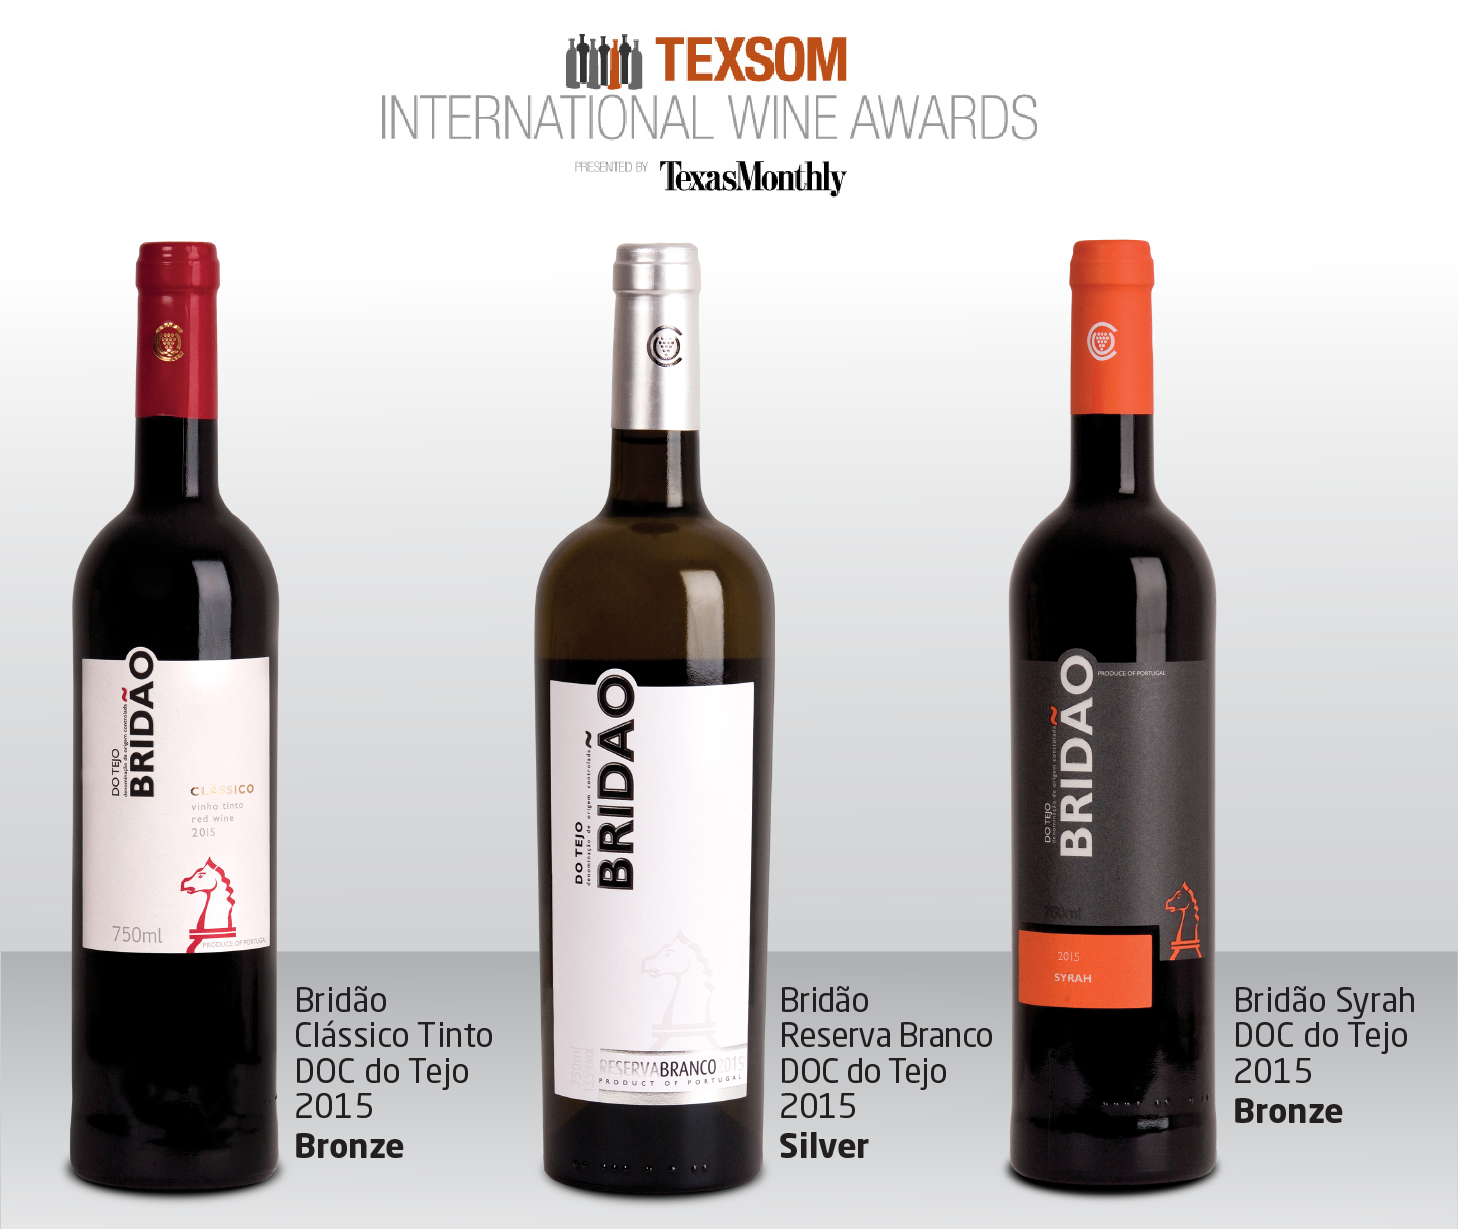 Adega do Cartaxo awarded at the TEXSOM International Wine Awards